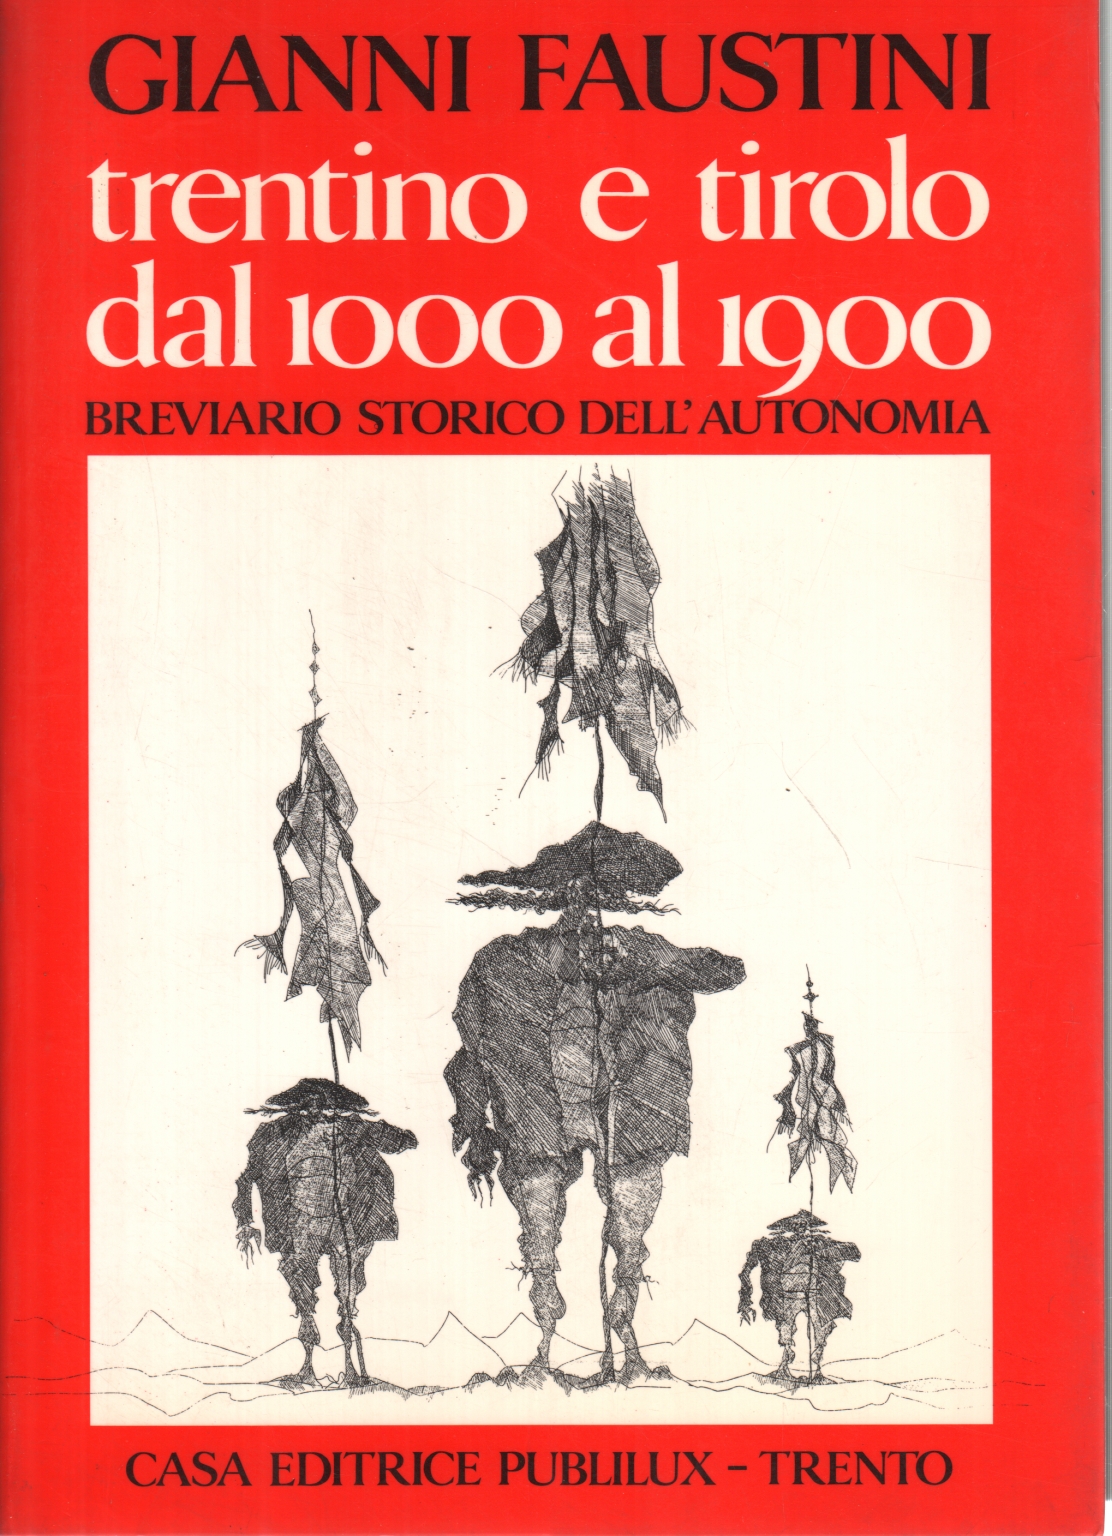 Trentino e Tirolo dal 1000 al 1900, Gianni Faustini